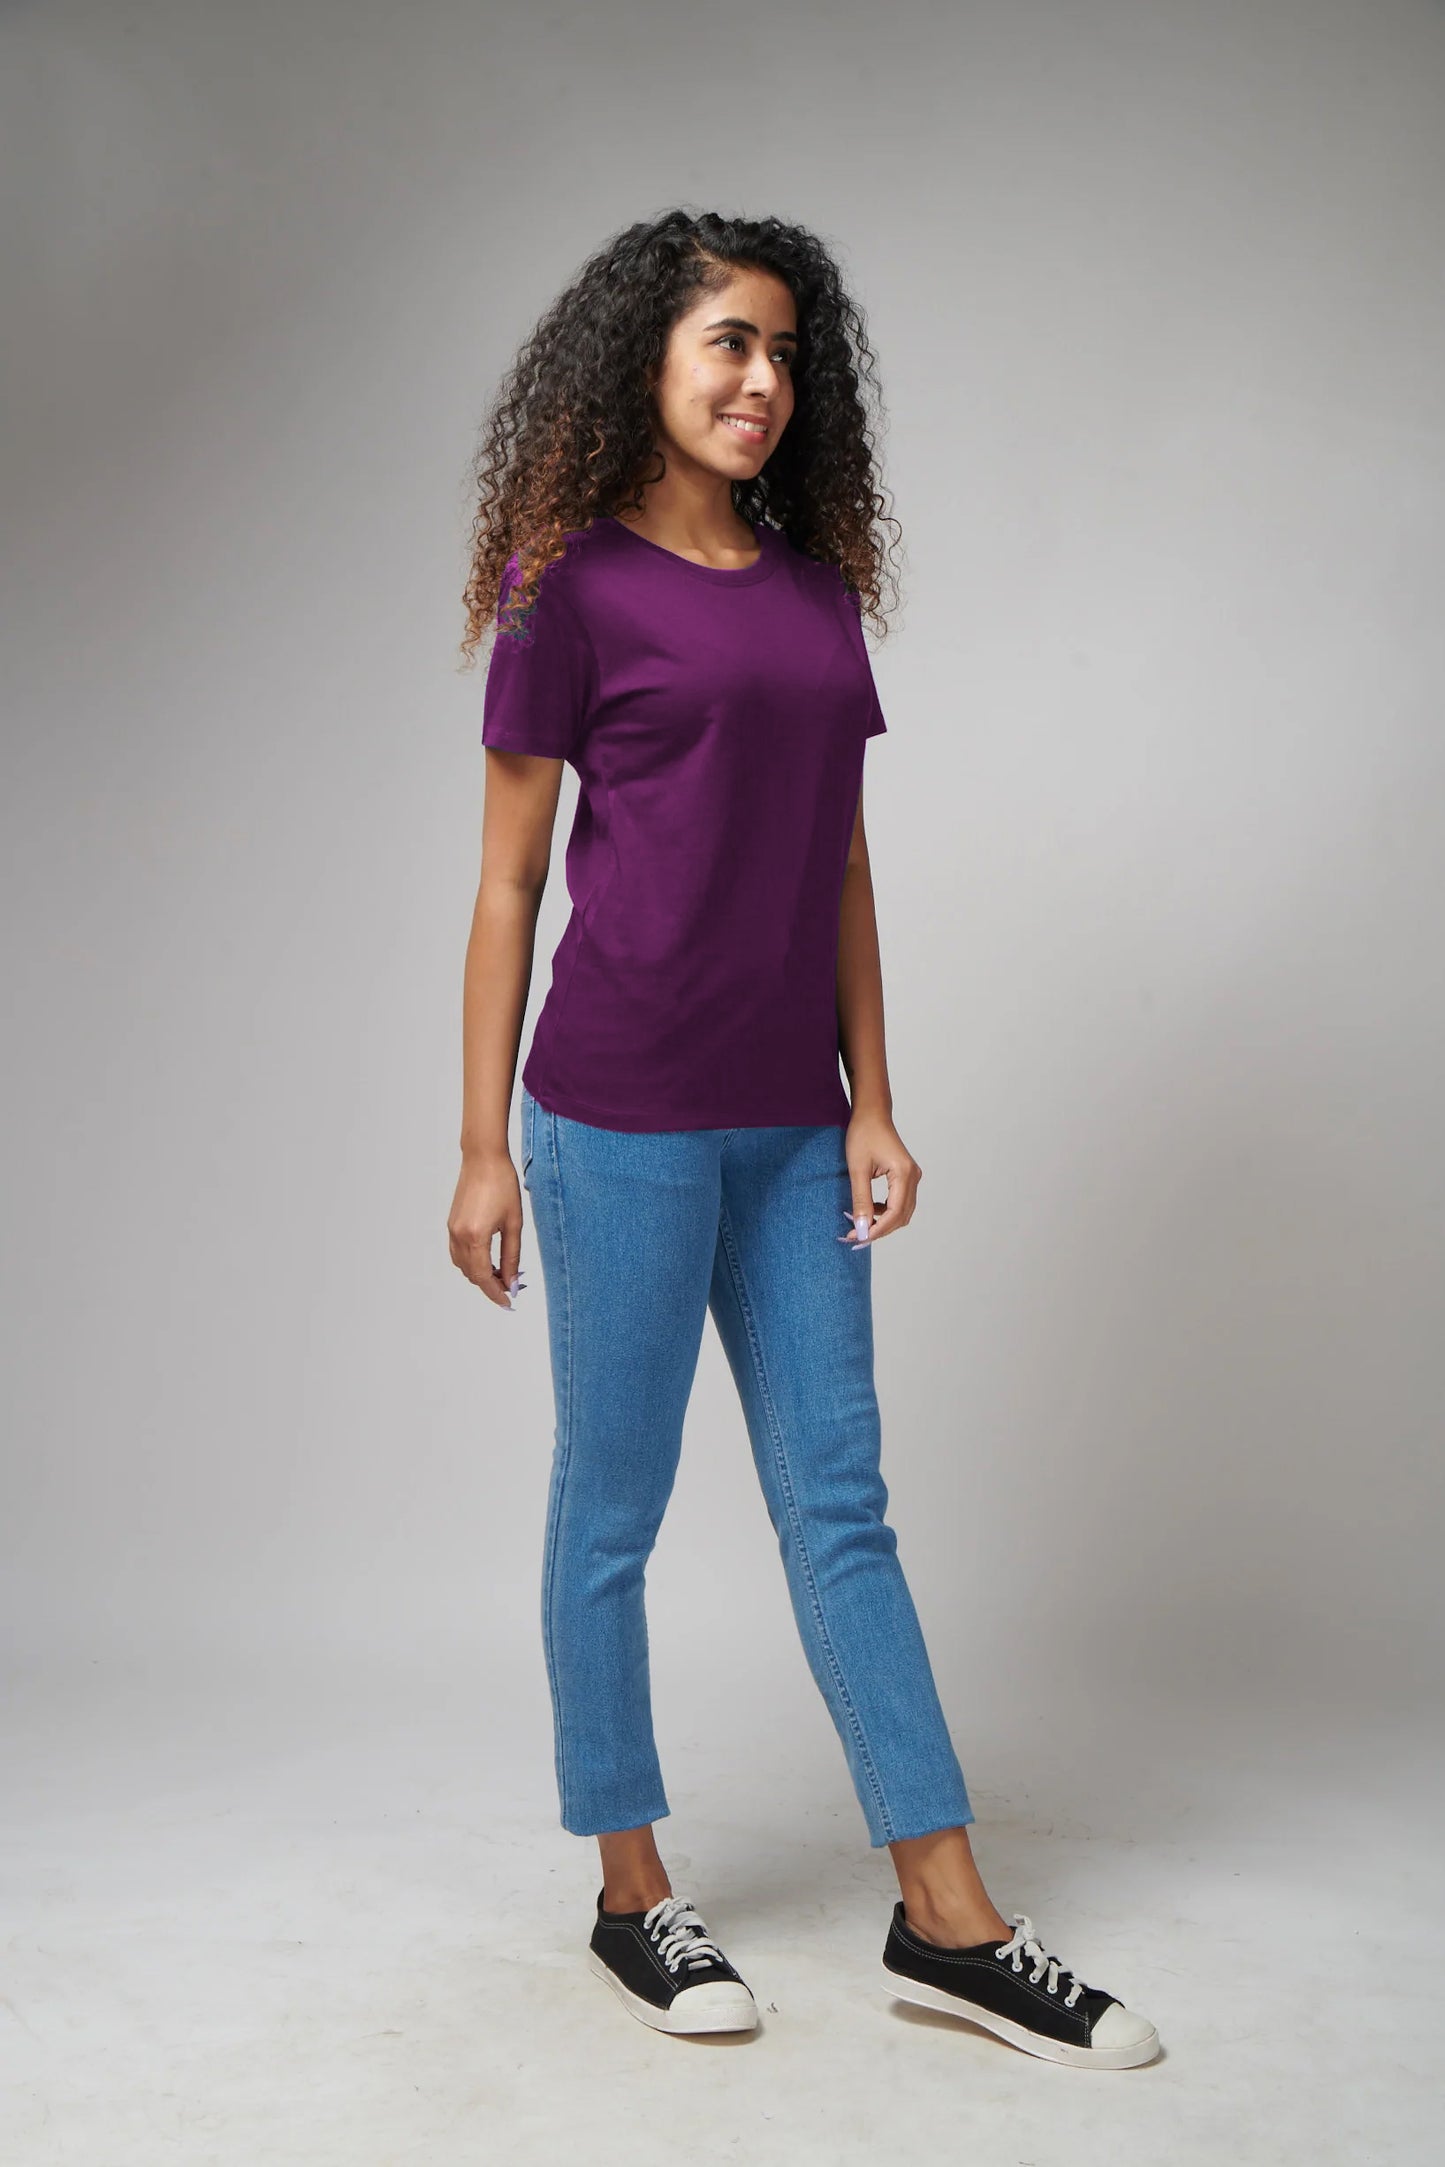 Women's Basic Dark Purple Half Sleeves T-Shirt